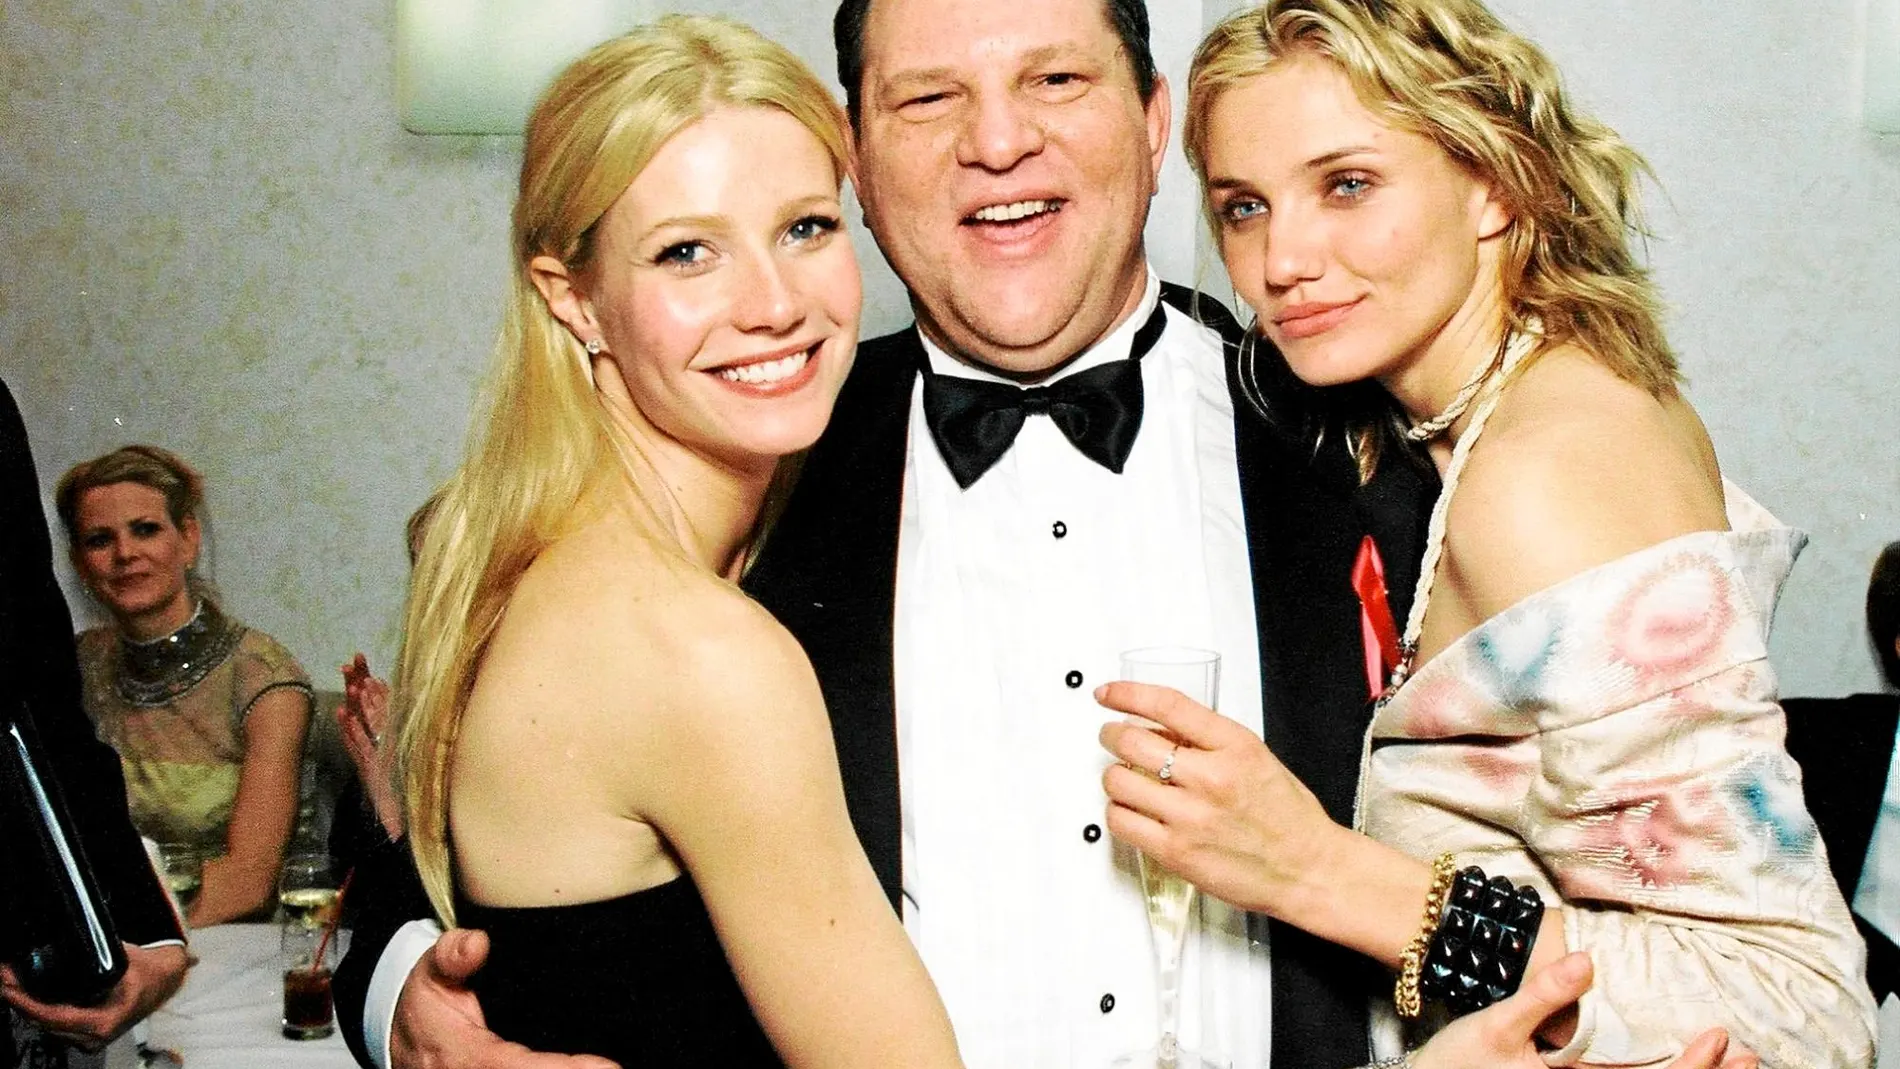 El productor de cine rodeado por las actrices Gwyneth Paltrow y Cameron Diaz durante la fiesta de los Globos de Oro